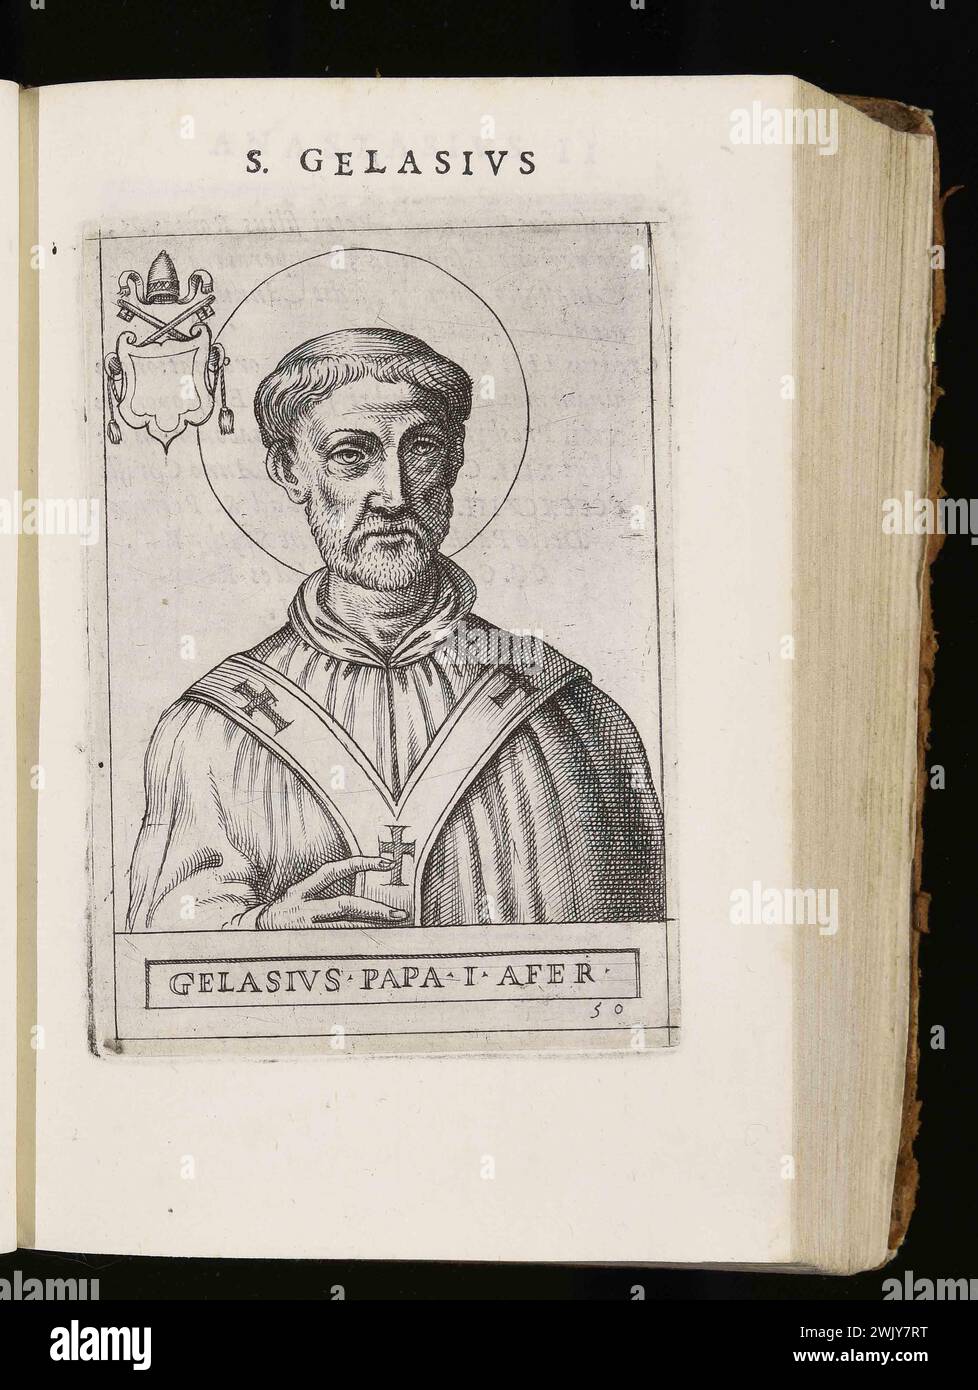 Un'incisione del 1580 di Papa Gelasio i, pontefice dall'AD492 all'AD496. Era il 49° papa. Era di discendenza berbera e fu l'ultimo papa a venire dal continente africano. Foto Stock